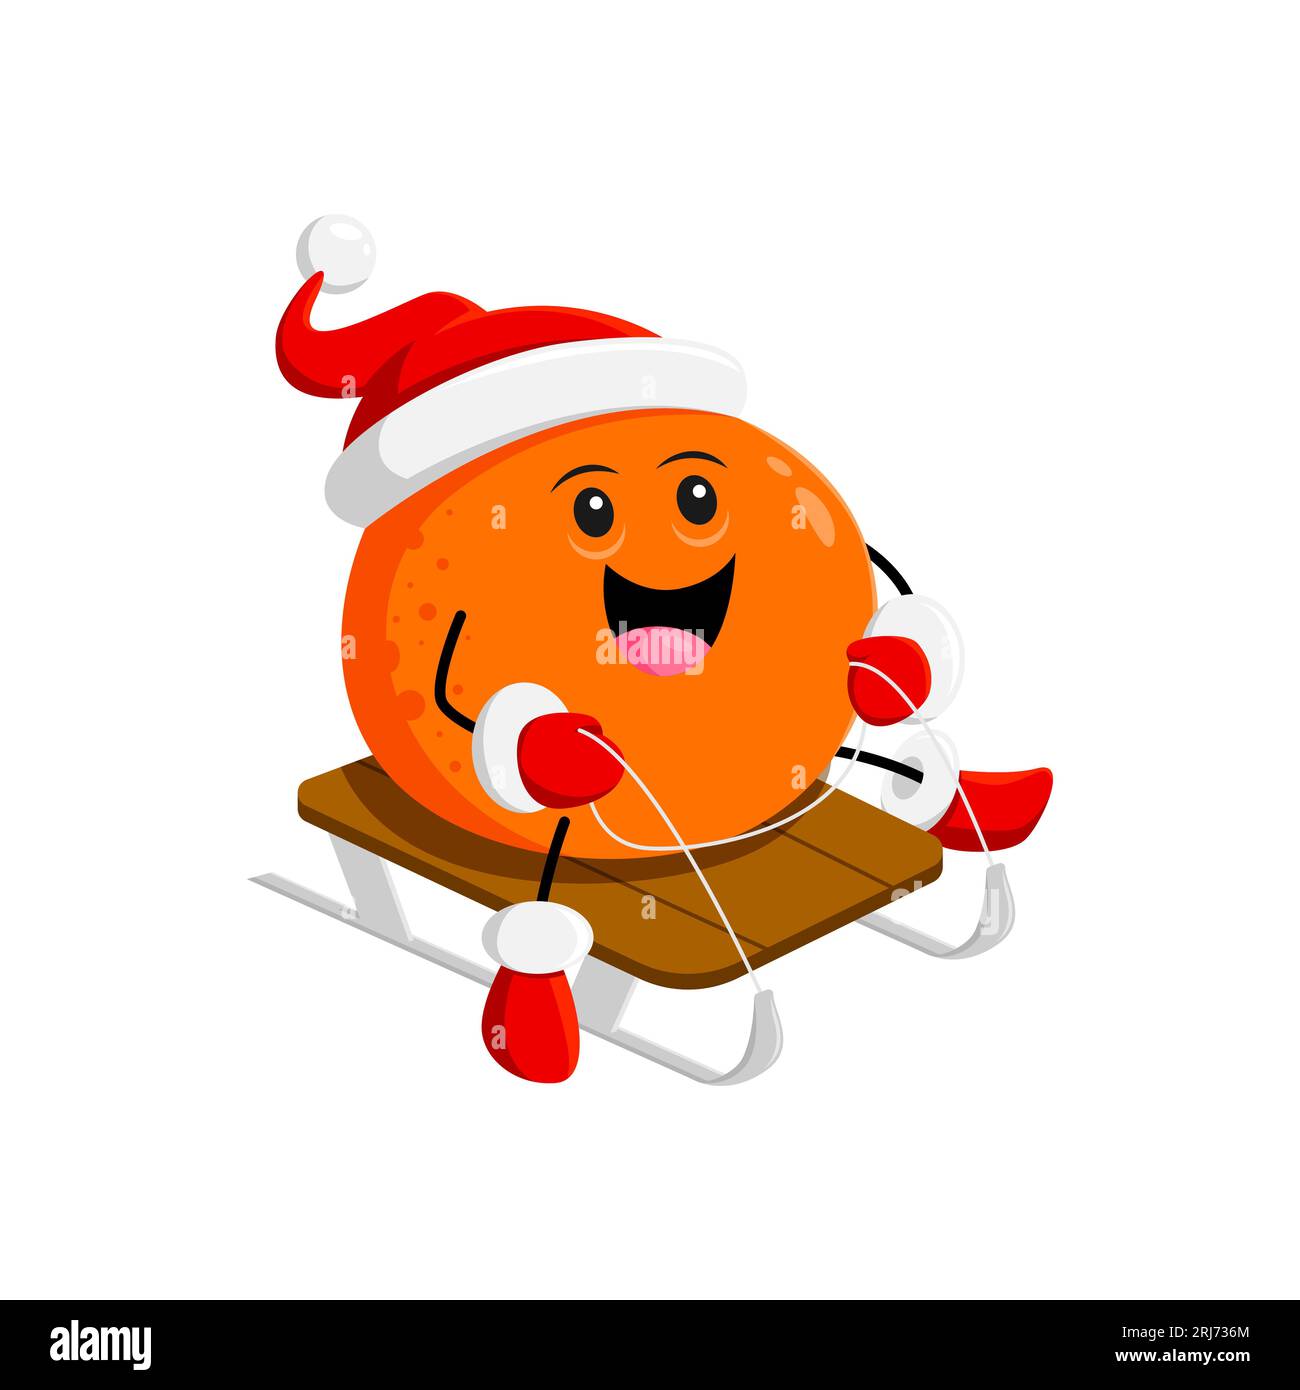 Dessin animé joyeux personnage de fruits orange de Noël traîne joyeusement à travers un pays des merveilles hivernales. Vecteur isolé joyeuse citrus personage Wear S Illustration de Vecteur